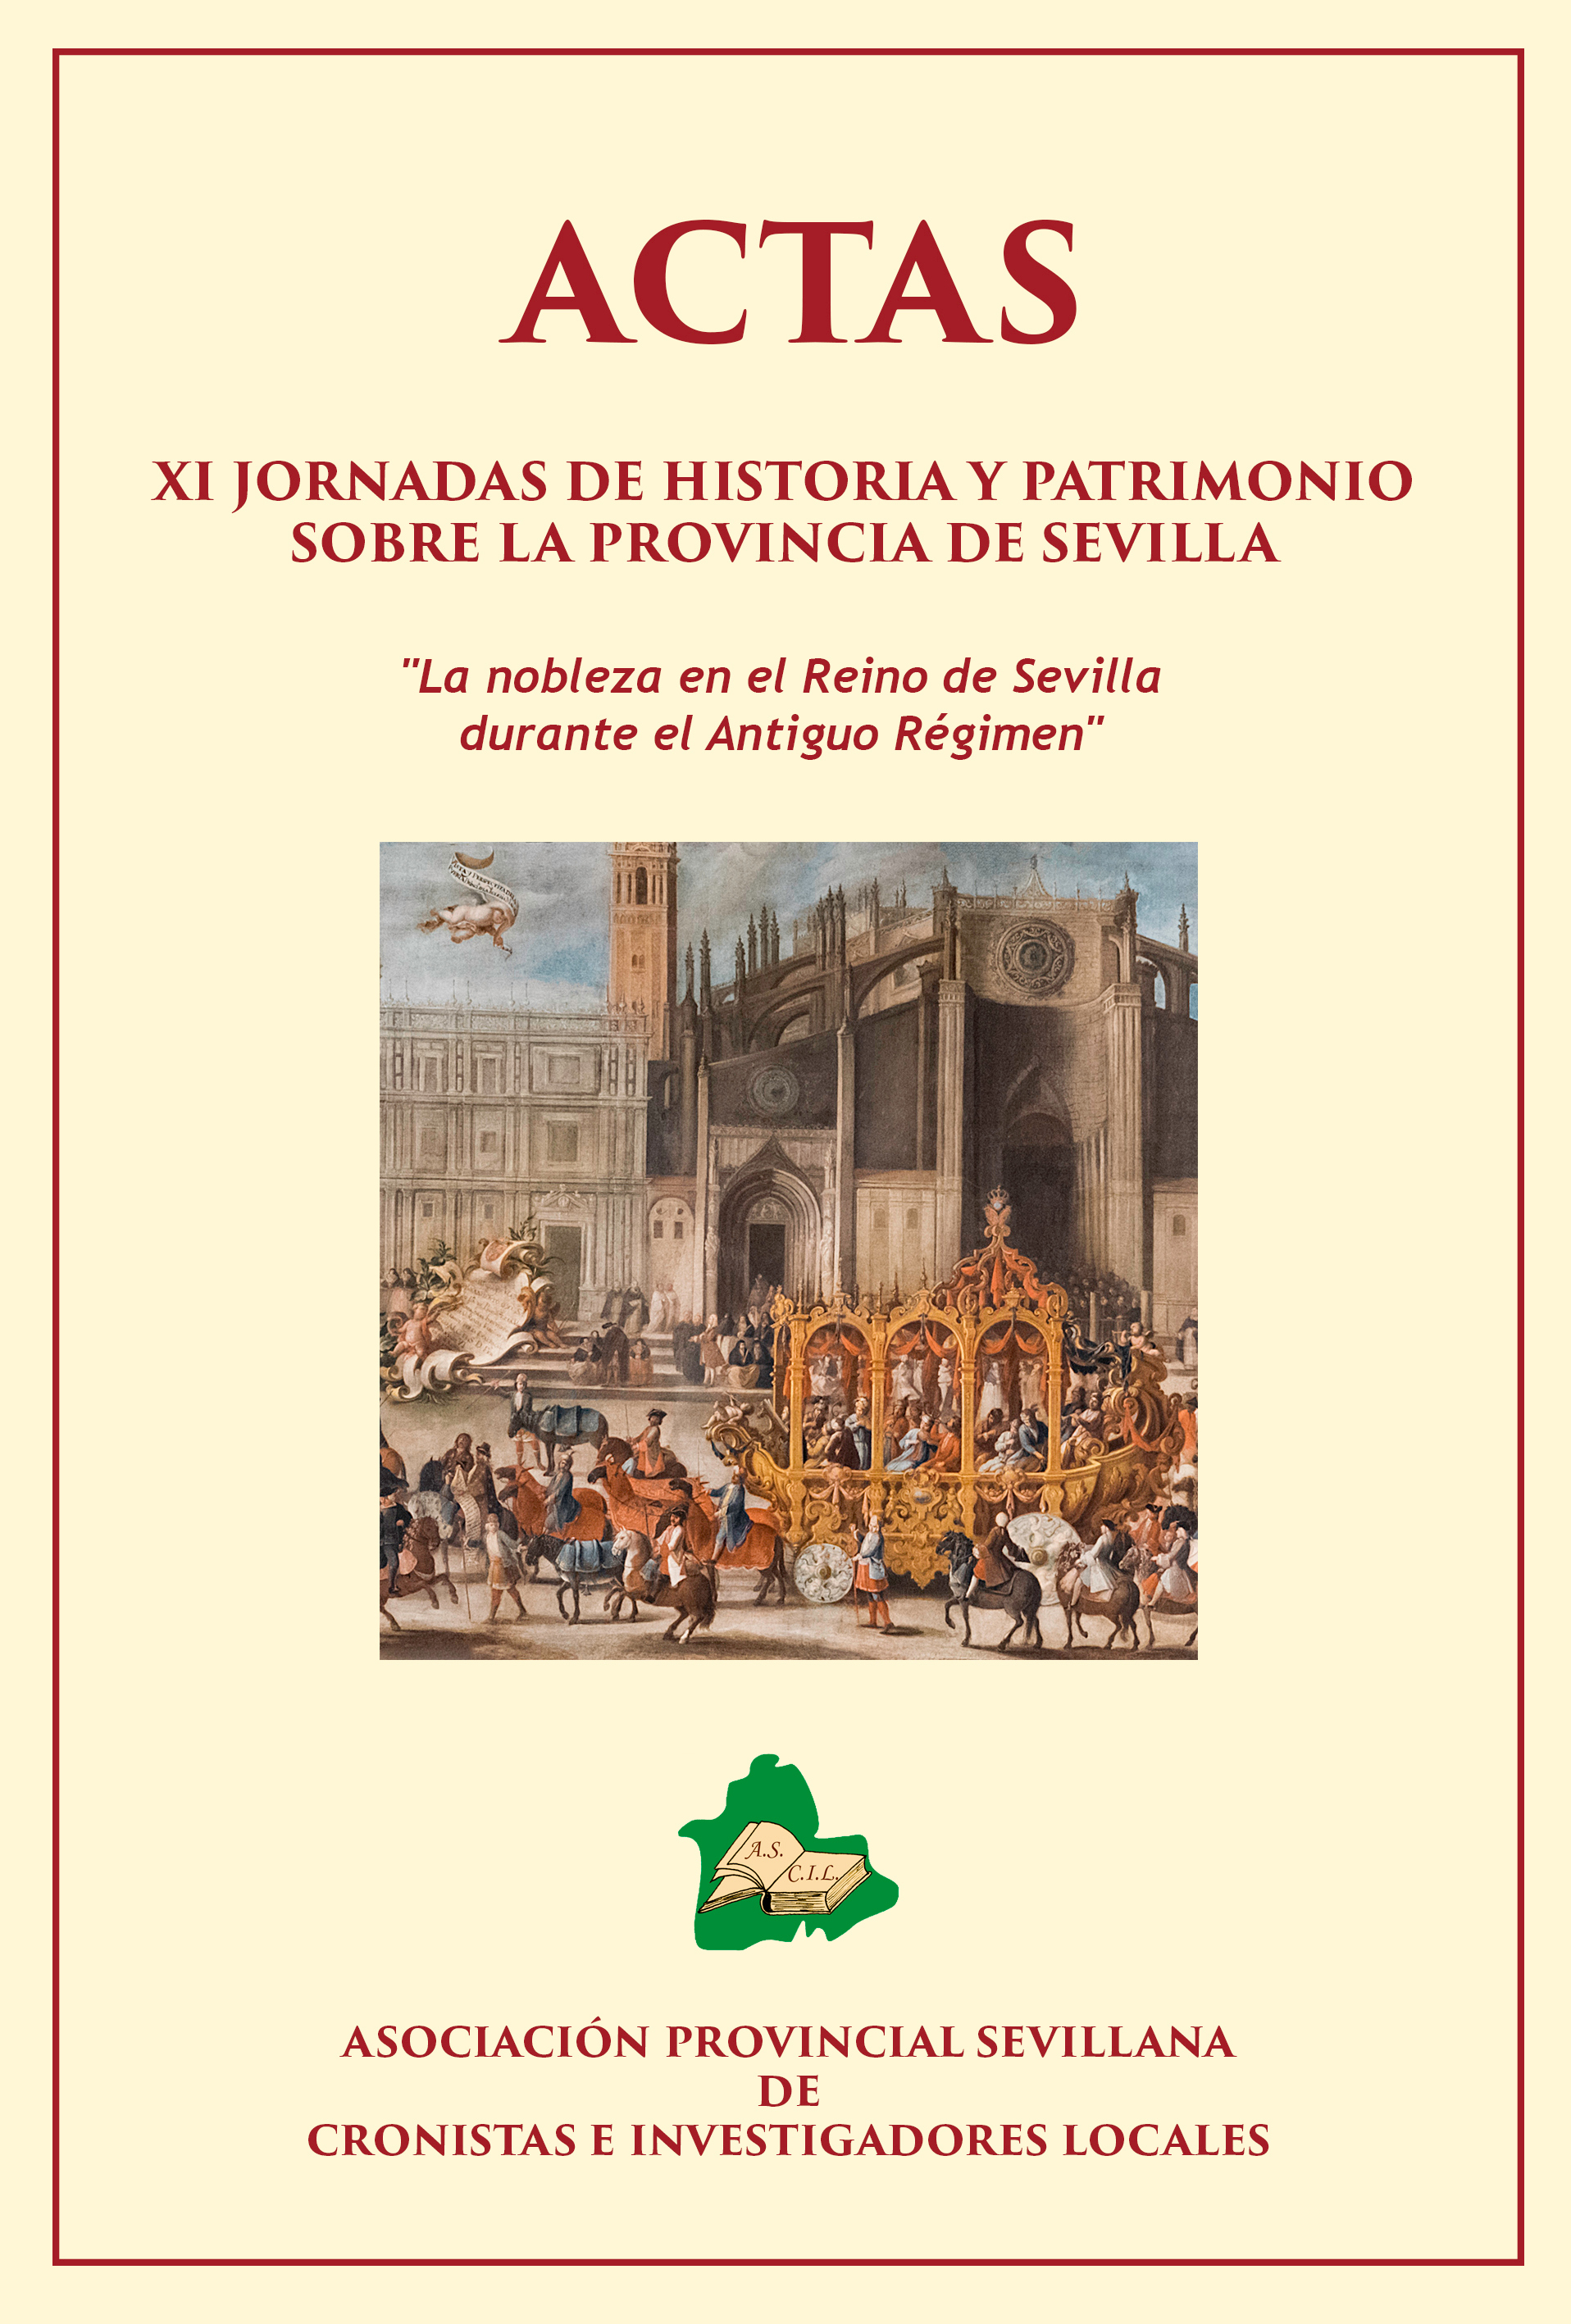 Imagen de portada del libro Actas XI Jornadas de historia y patrimonio sobre la provincia de Sevilla